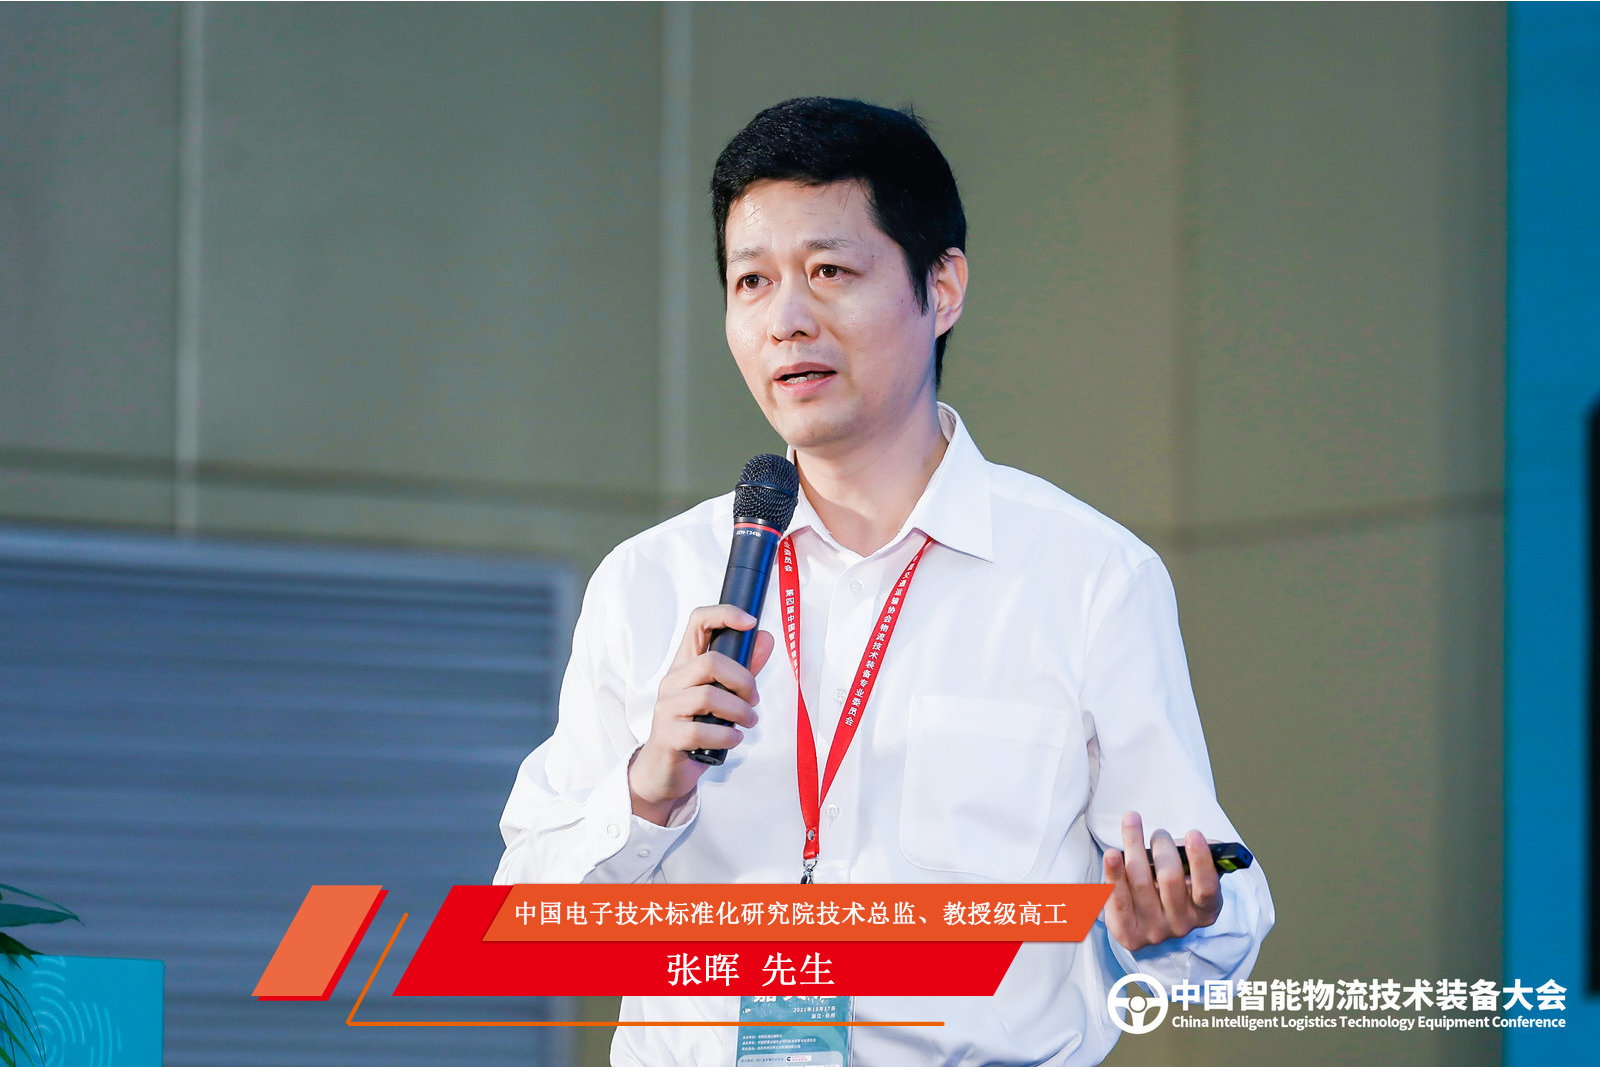 中国电子技术标准化研究院技术总监、教授级高工张晖分享：5G时代面向智慧物流的物联网技术发展趋势